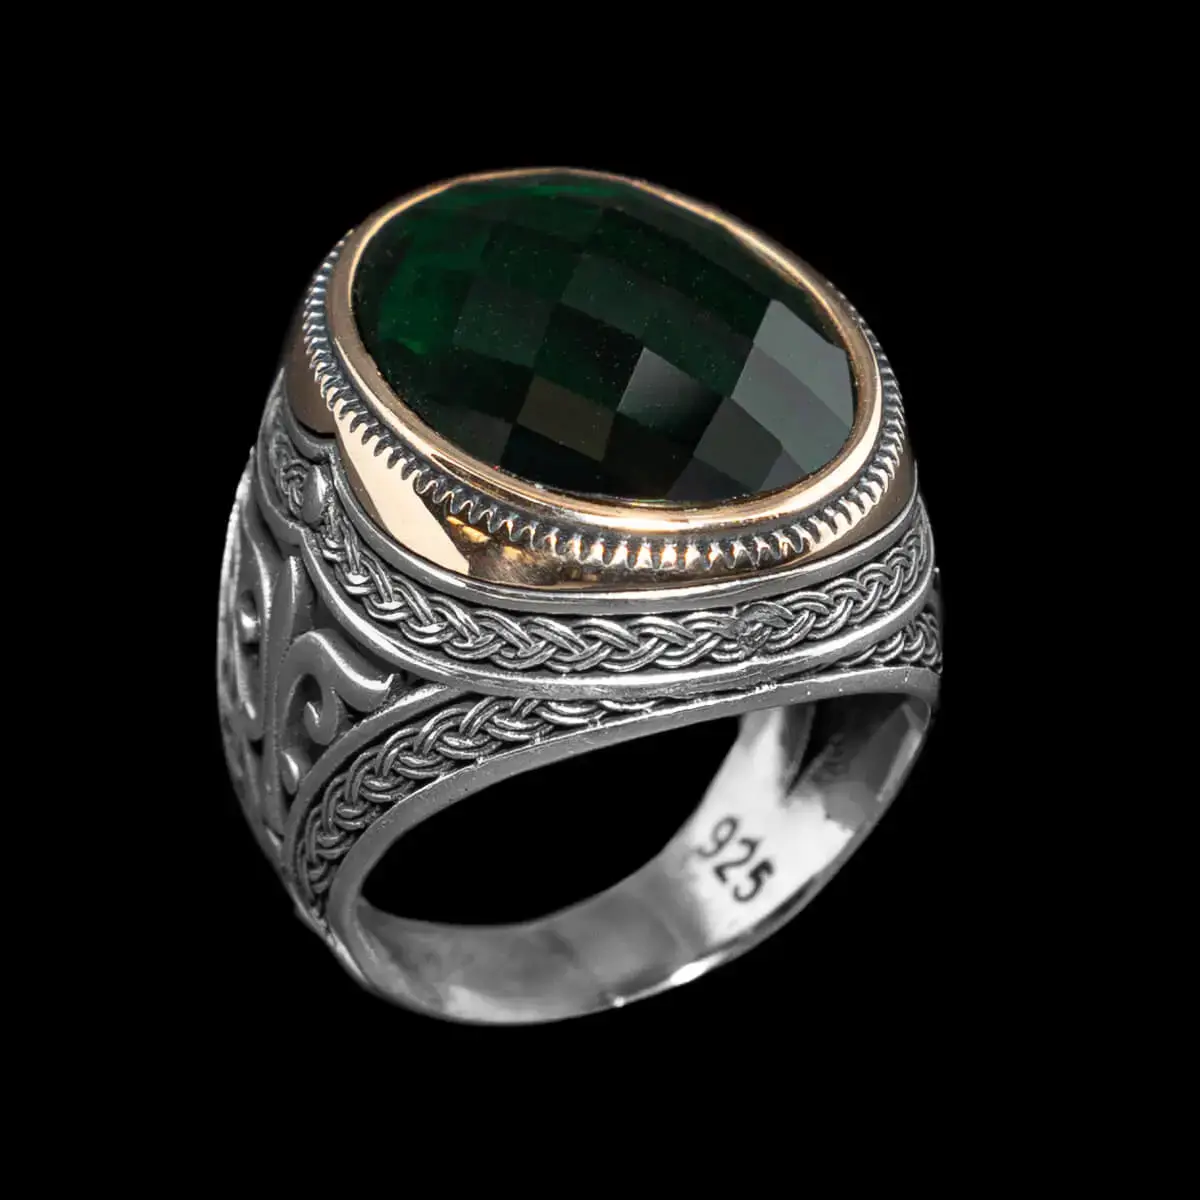 Royal Hulk prsten je izvanredno remek-delo, ukrašen veličanstvenim zelenim cirkonom, okružen pozlatom koja dodaje notu luksuza. Njegova izuzetna elegancija i sofisticiran dizajn čine ga neodoljivim dodatkom za i komadom nakita koji zahteva pažnju.